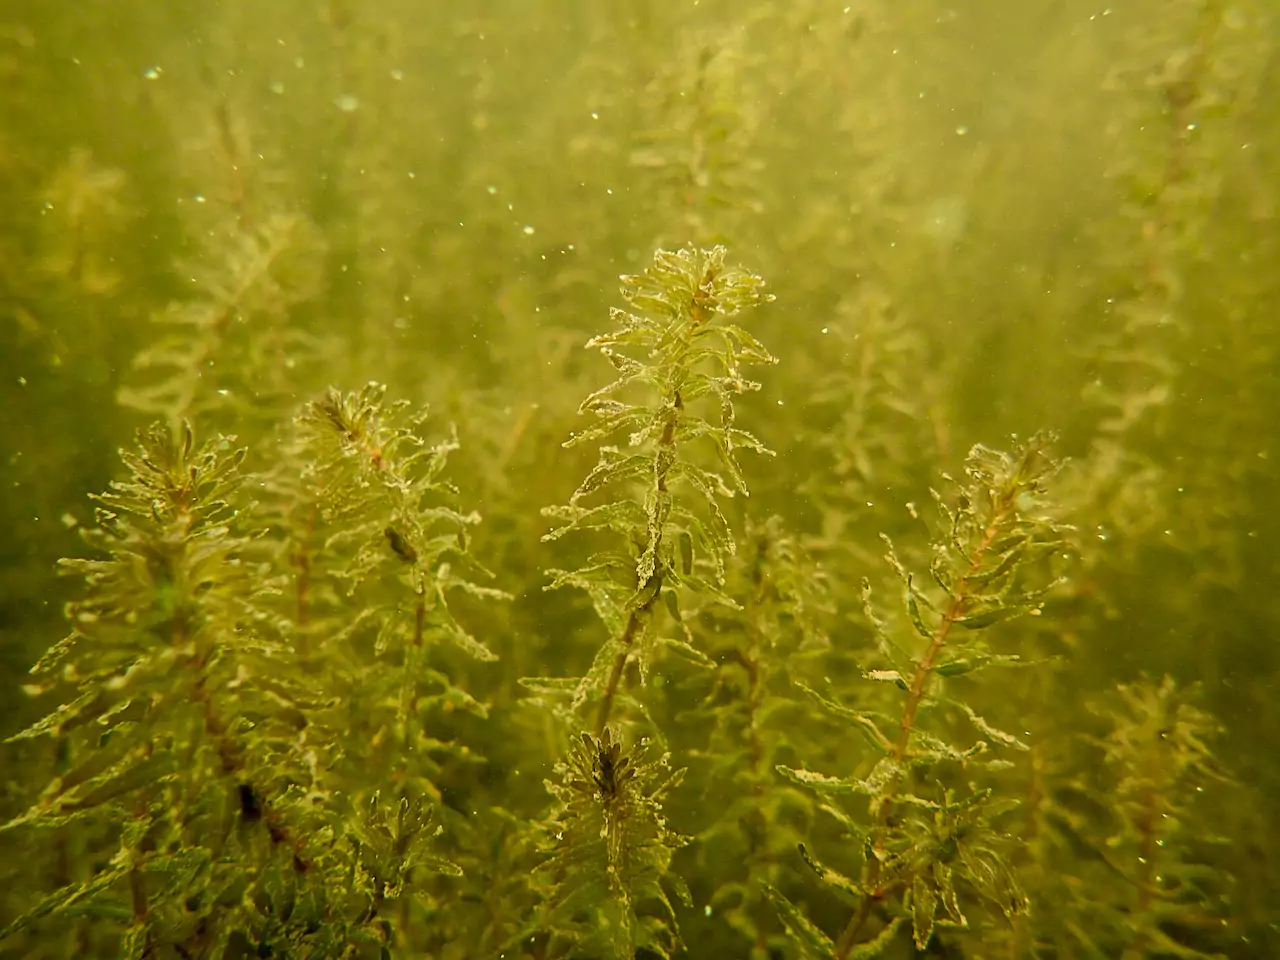 Аквариумное растение элодея: выращивание, размножение, фото